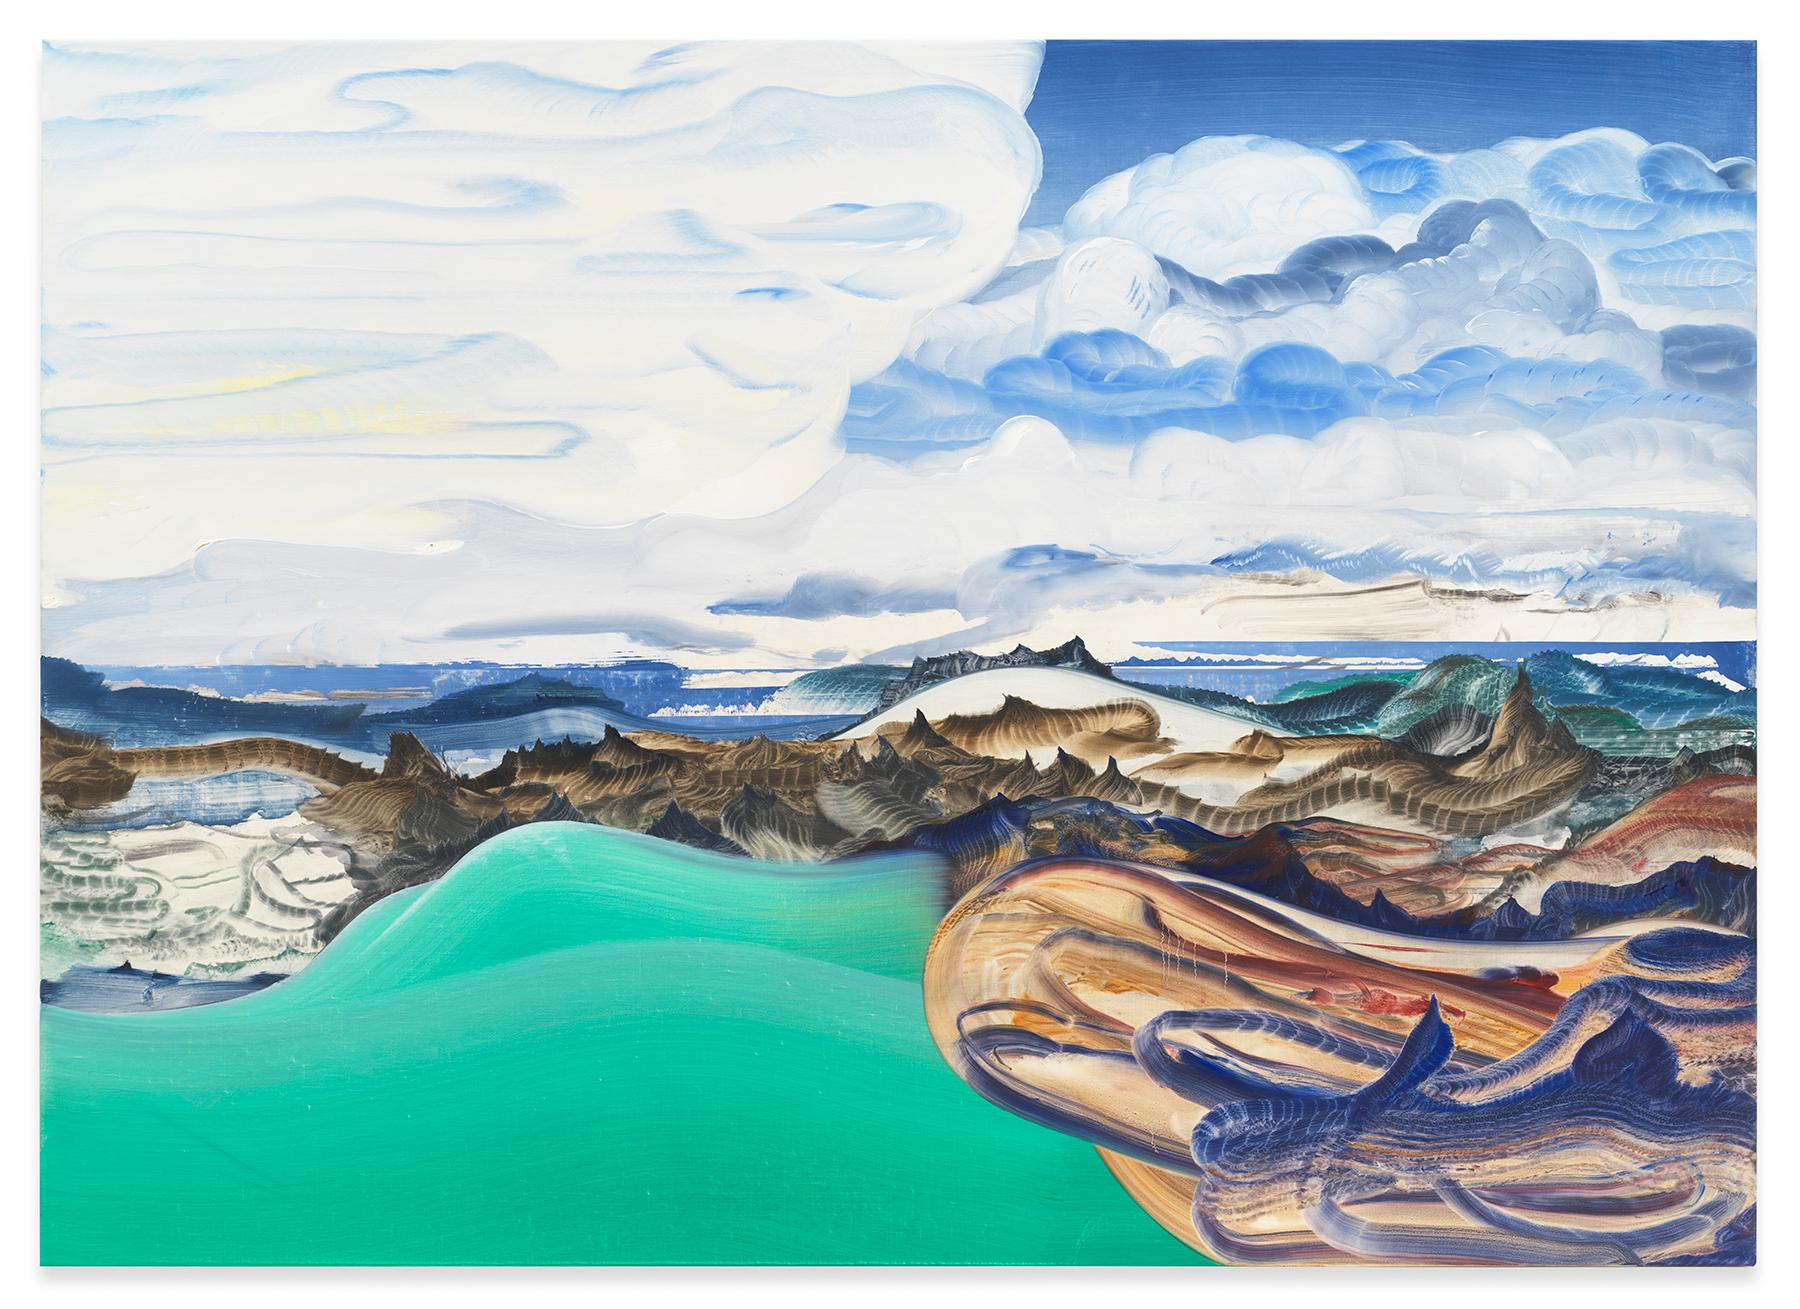 Revolution" ist eine Mischung aus traditioneller Landschaftsmalerei und Abstraktion und ergänzt die Sammlung der JONATHAN FERRARA GALLERY mit Werken von Elliott Green. "Revolution" wurde im Jahr 2020 mit Ölfarbe auf Leinen hergestellt.

Elliott